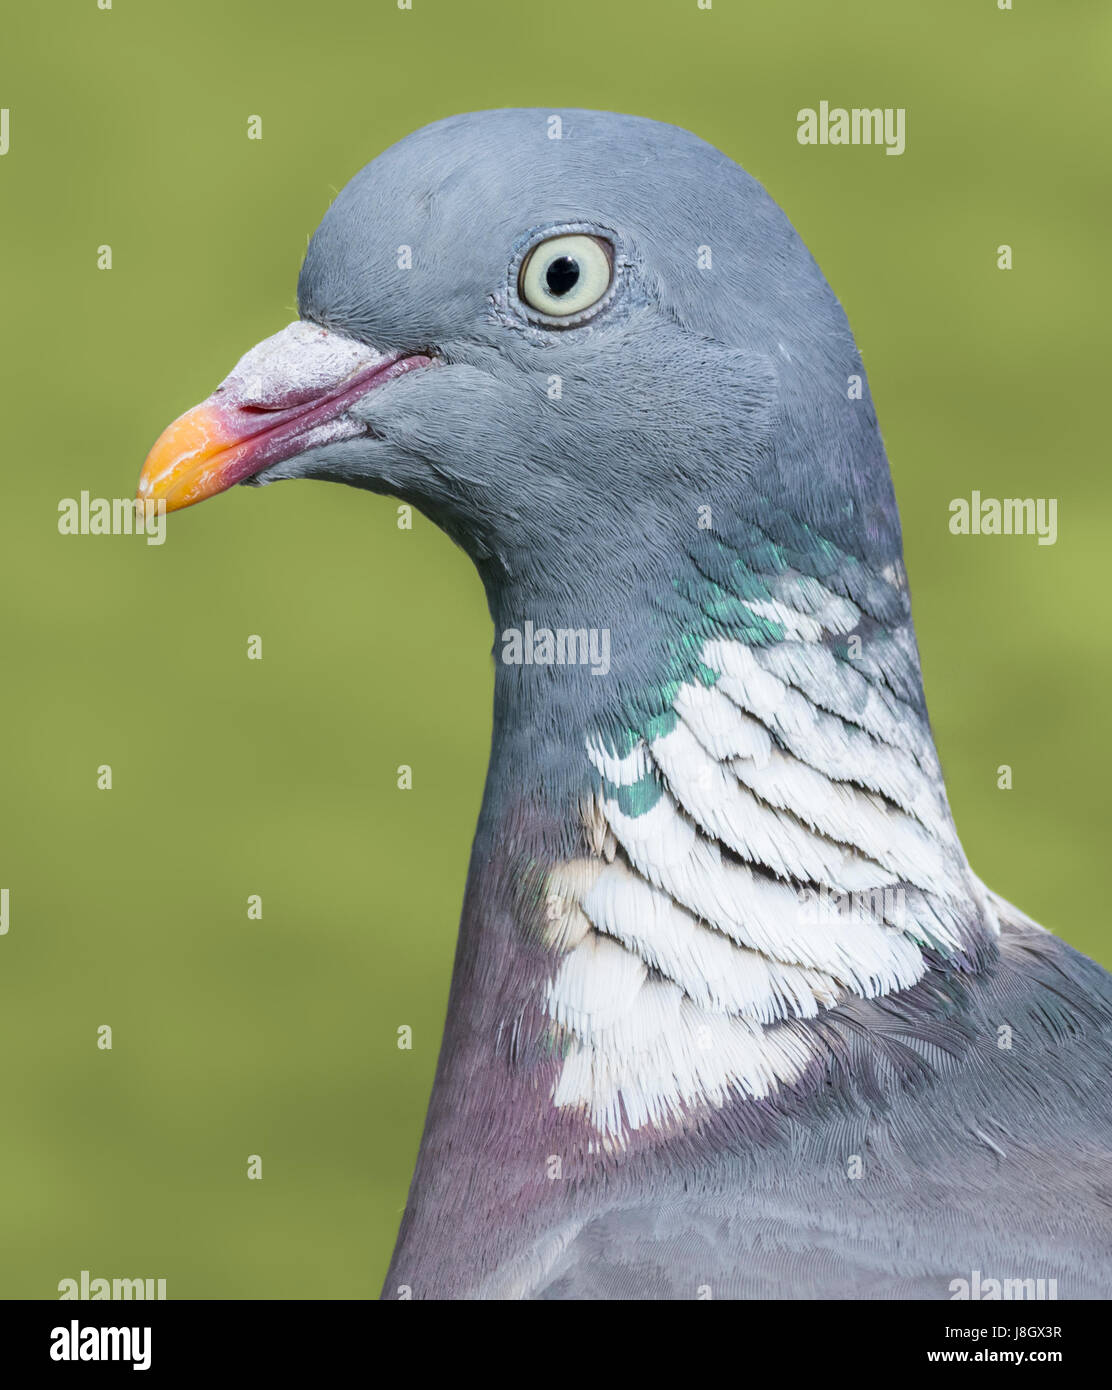 La tête et le cou de Pigeon macro. Bois commun pigeon (Columba palumbus) libre. Banque D'Images